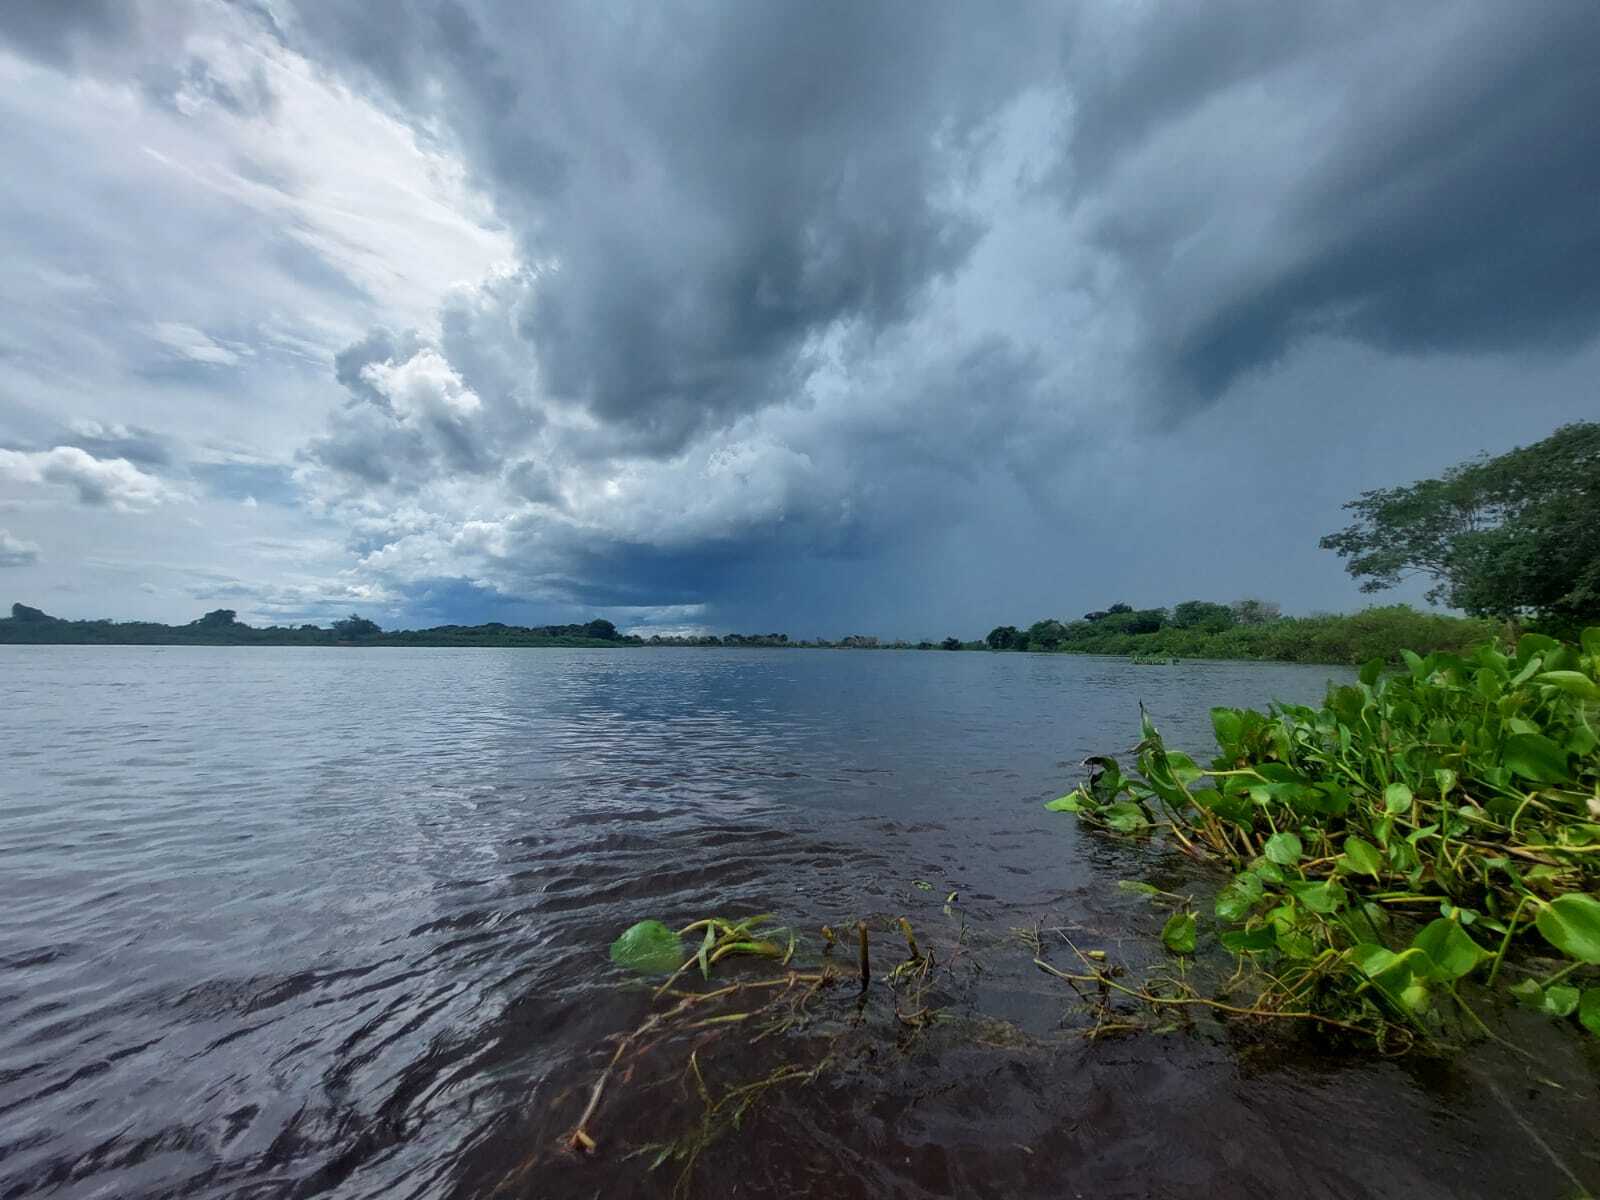 Com 6 focos de incêndio nos últimos 15 dias, Pantanal está em alerta para chuvas